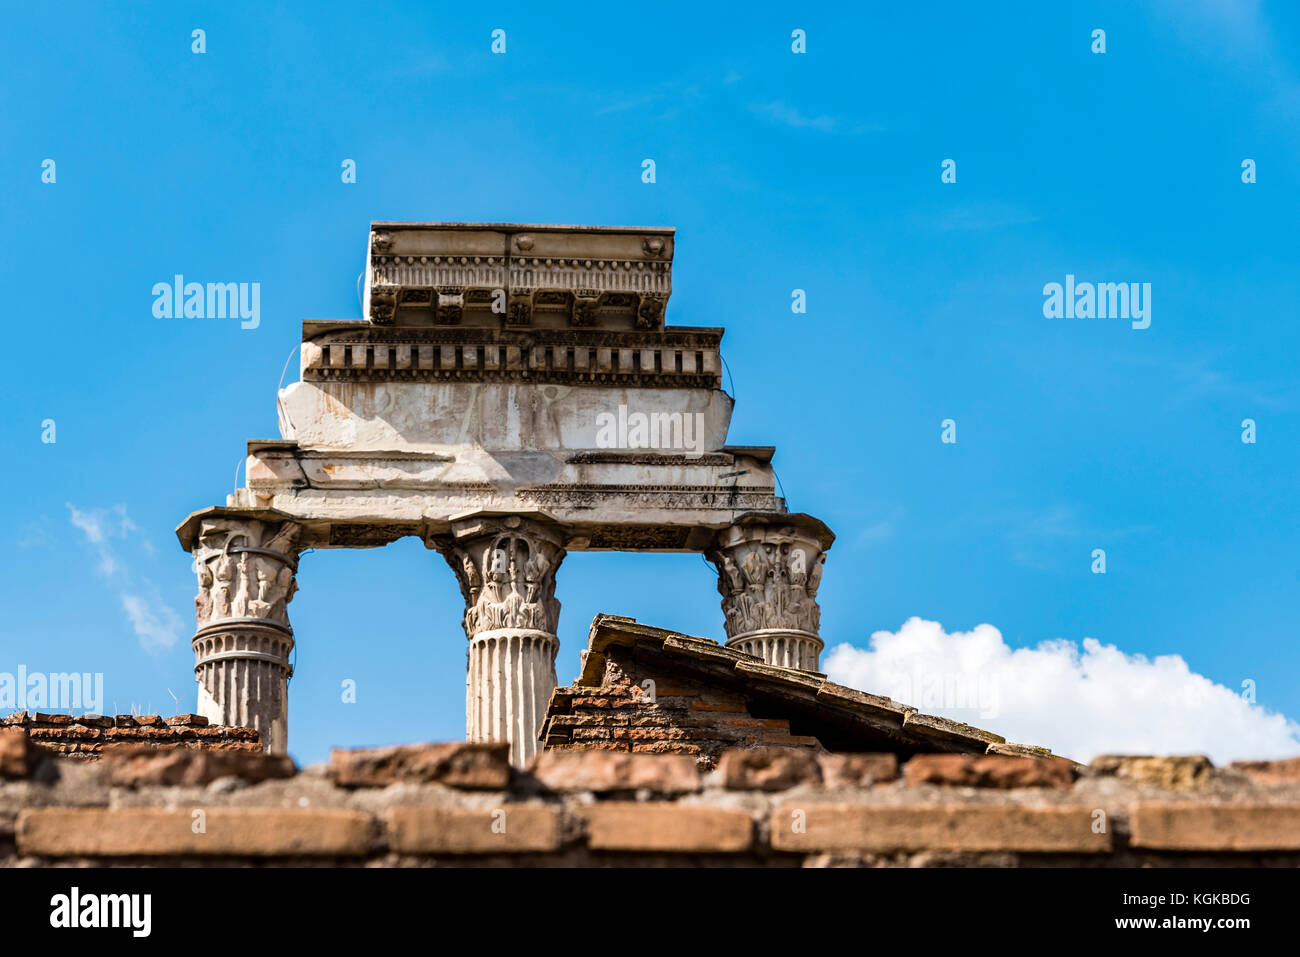 Bleibt der drei Säulen der Tempel von Castor und Pollux, Forum Romanum, Rom, Italien. Tempel Spalte Ruinen der antiken Rom am sonnigen Tag. Stockfoto